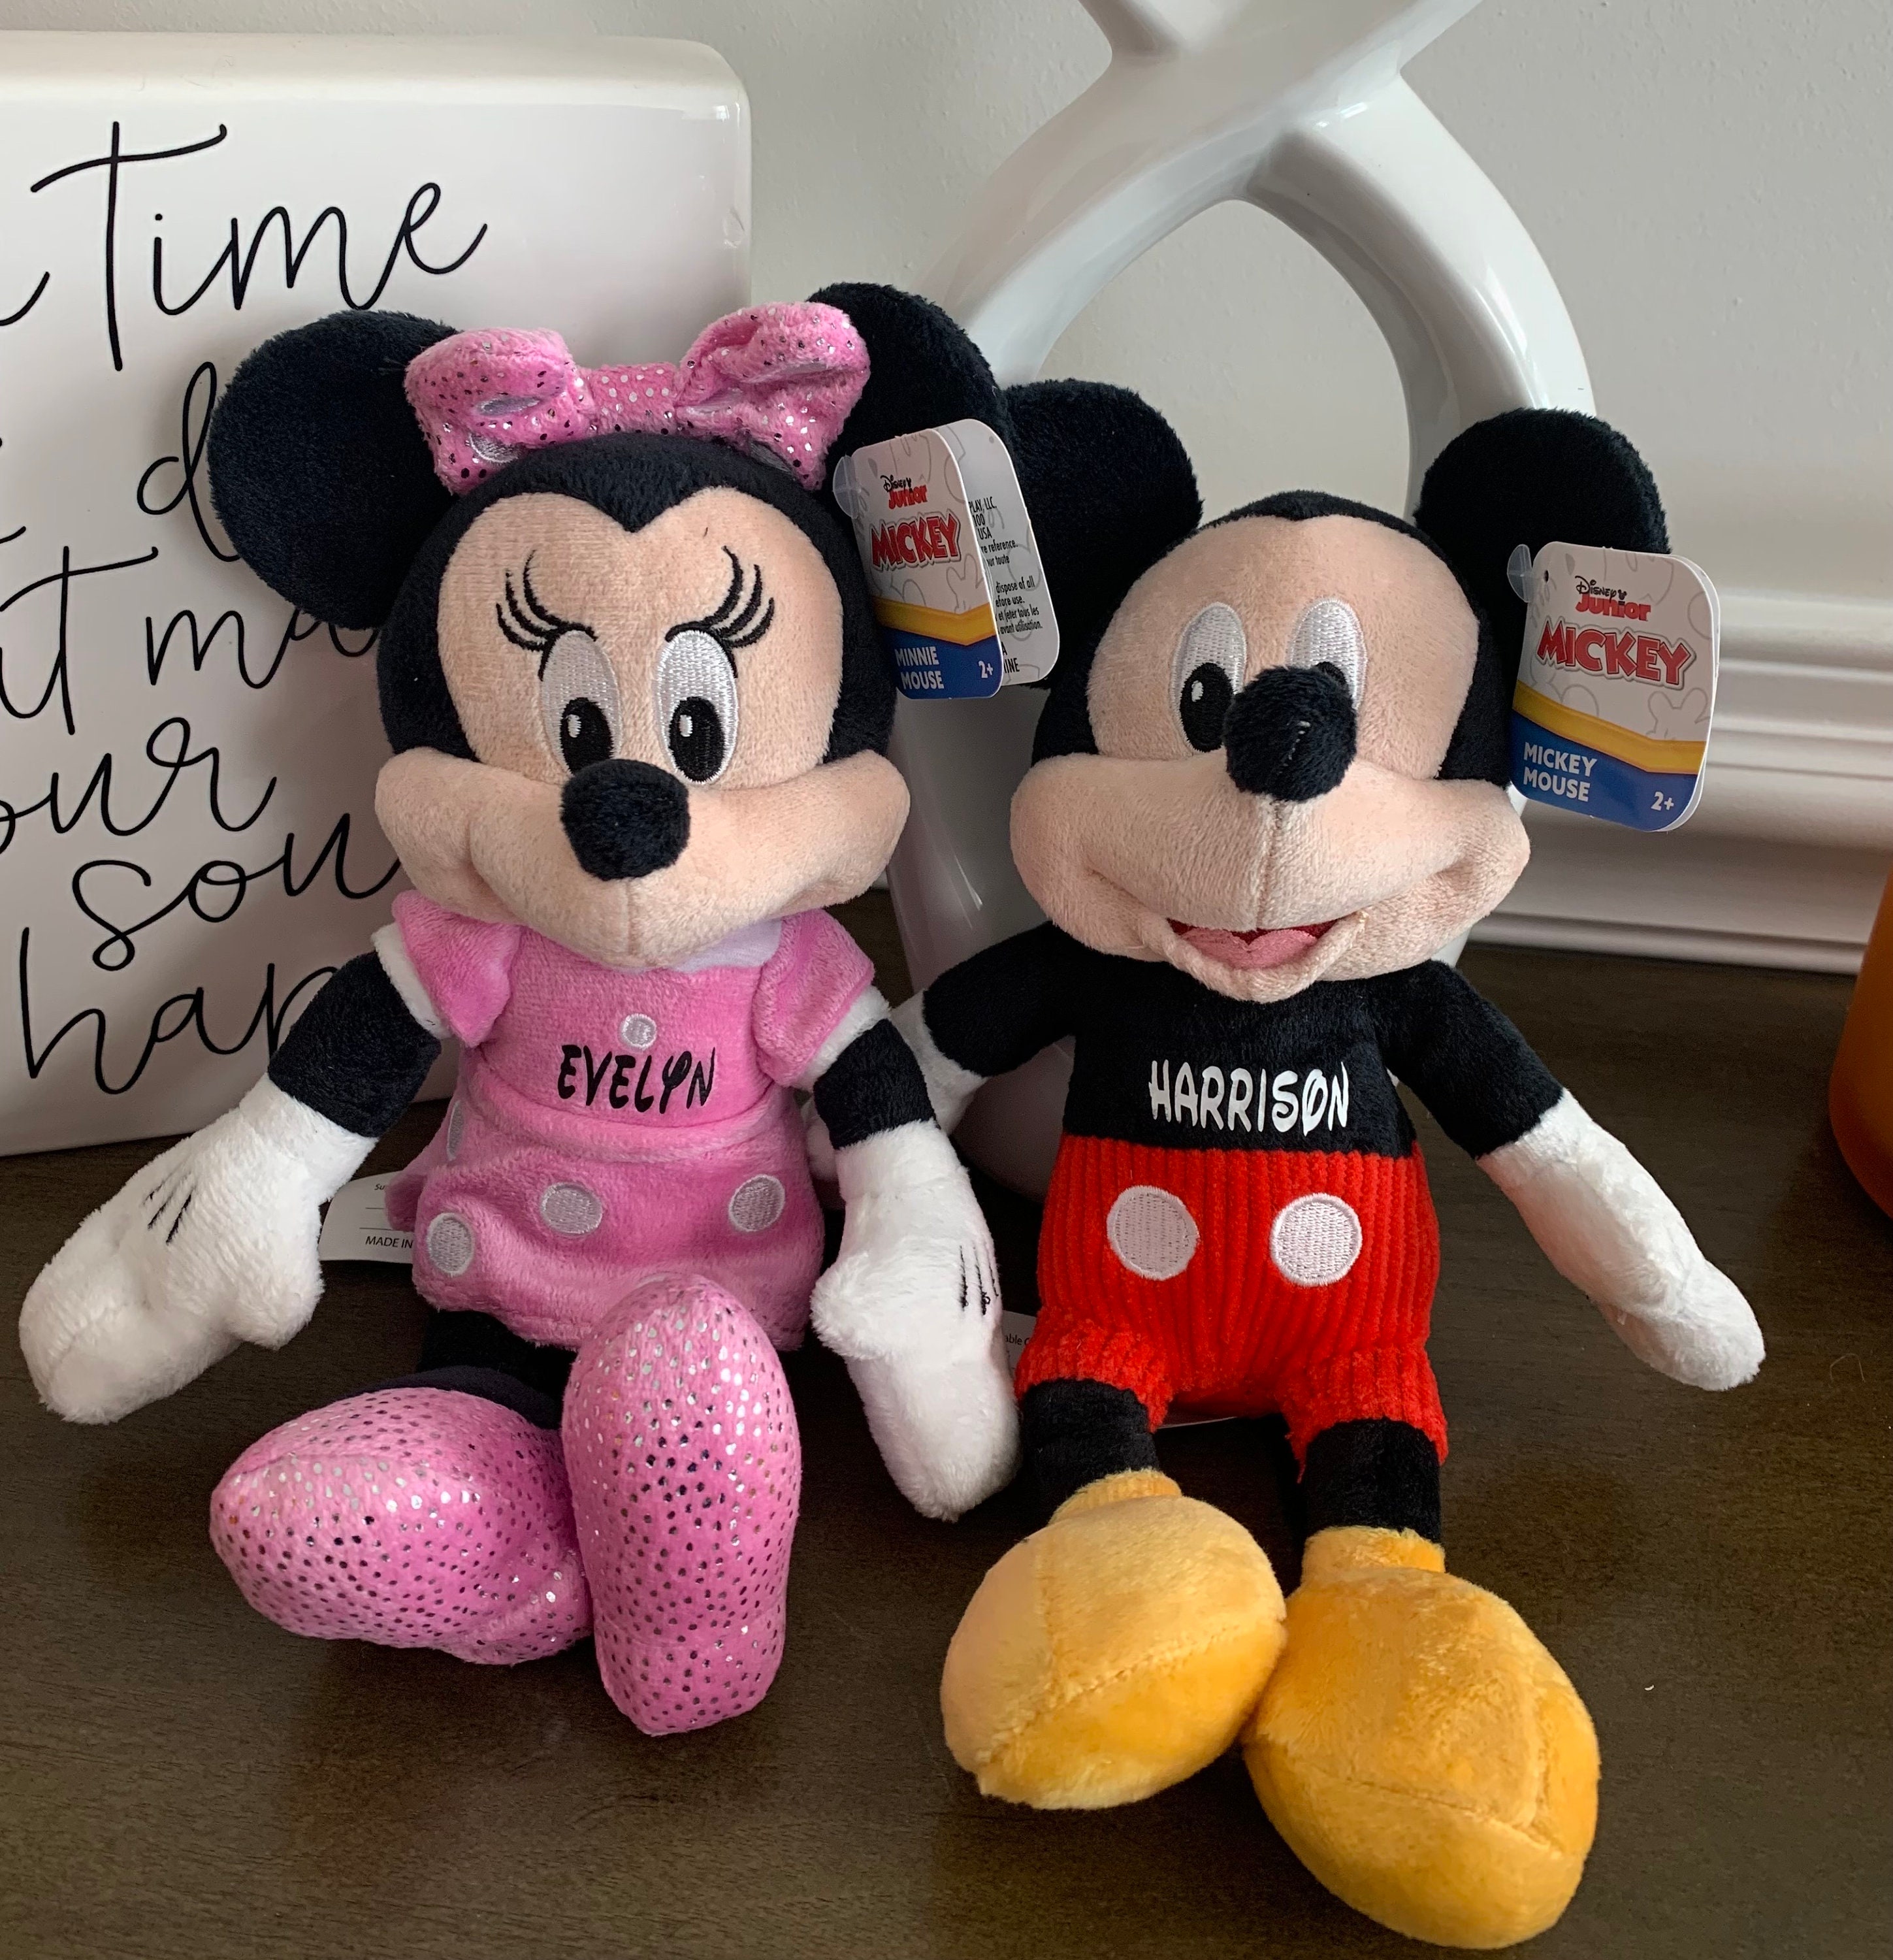 Peluches Disney Personalizados. Minnie y Mickey con tu nombre